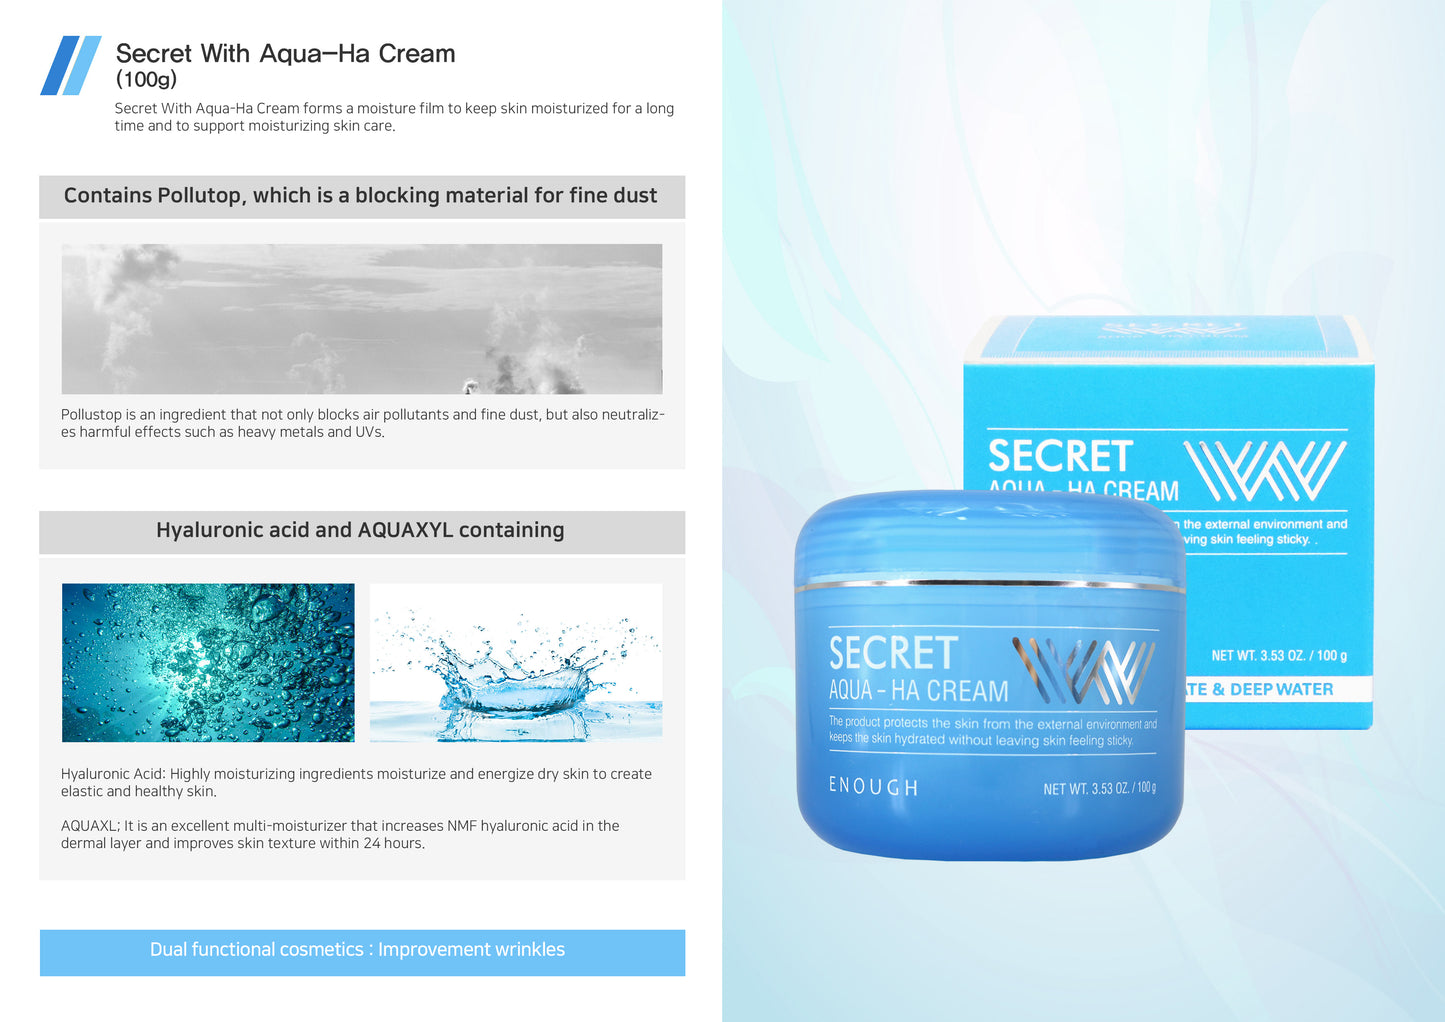 ENOUGH Secret Aqua-HA Cream (100gr)